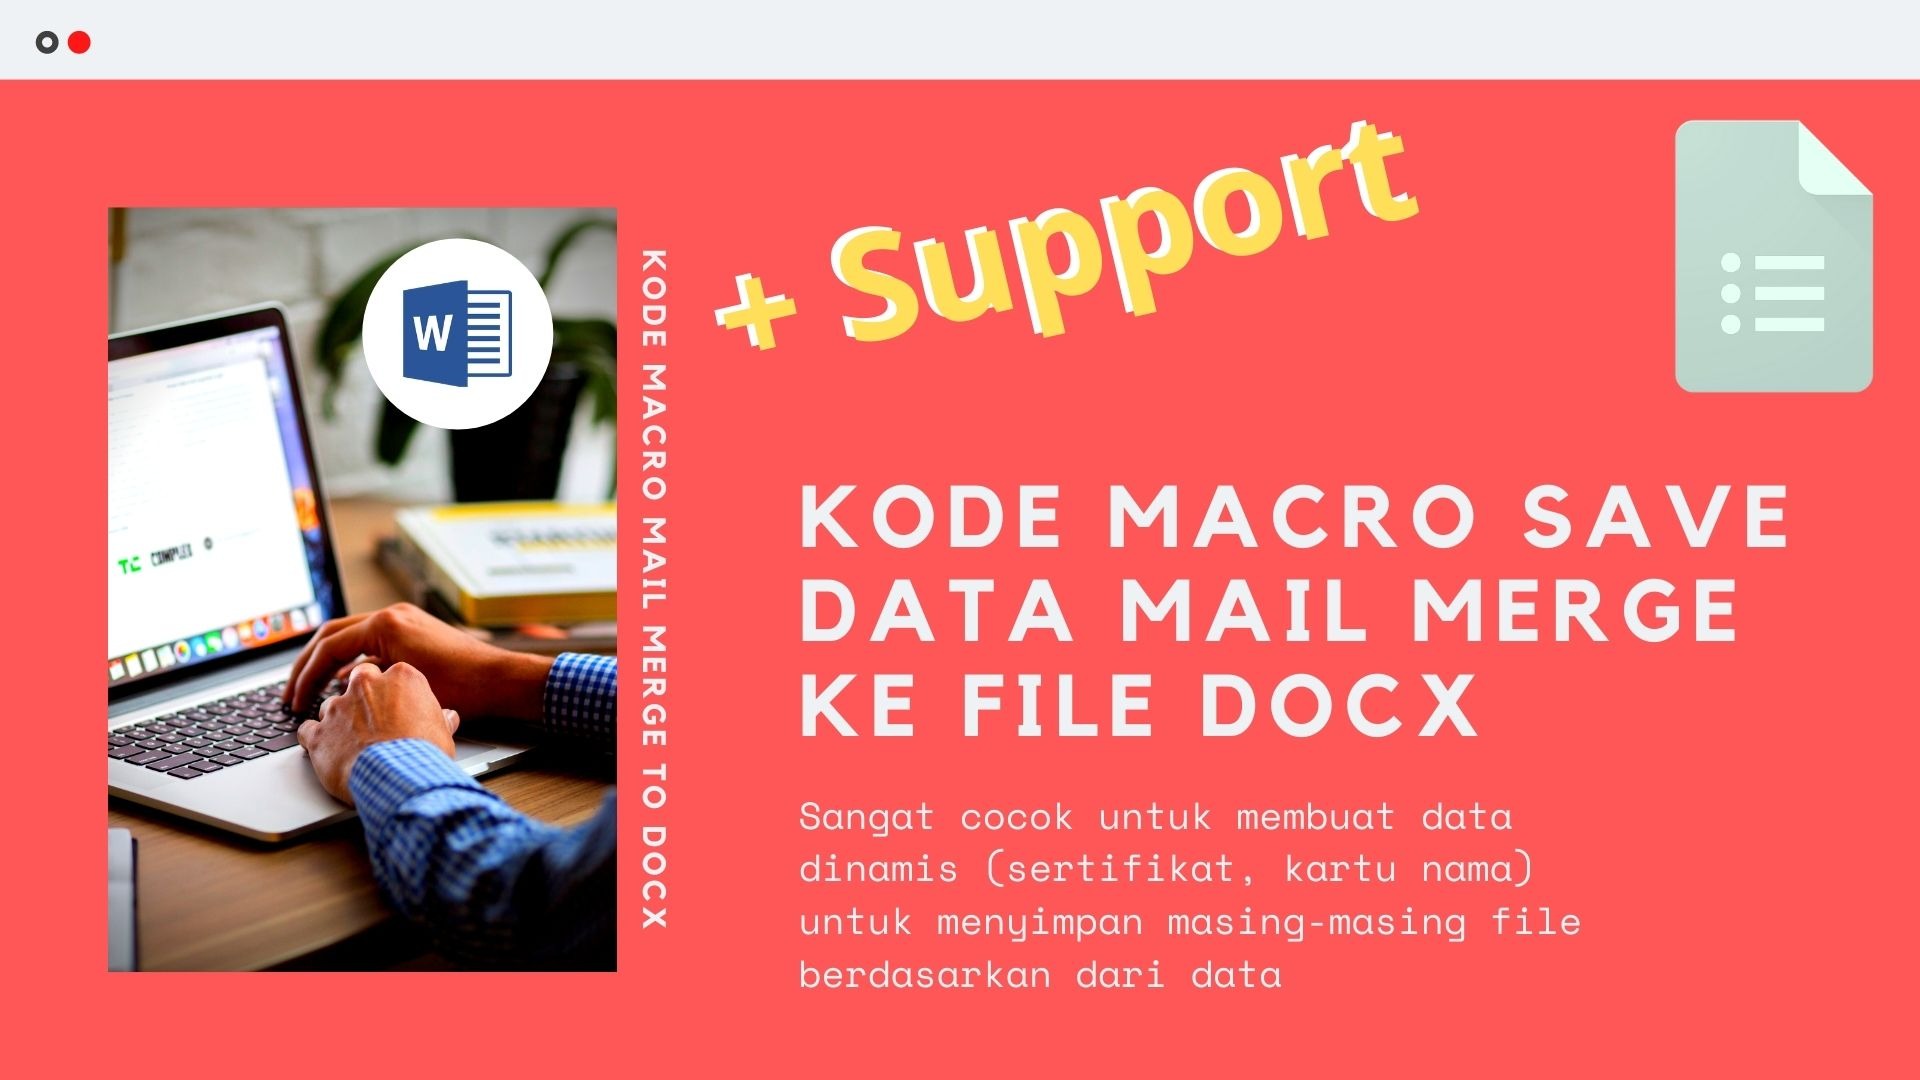 Gambar Produk Kode Macro Makro Microsoft Word Untuk Save Data Mail Merge Ke Bentuk Docx Secara Otomatis Plus Layanan Support